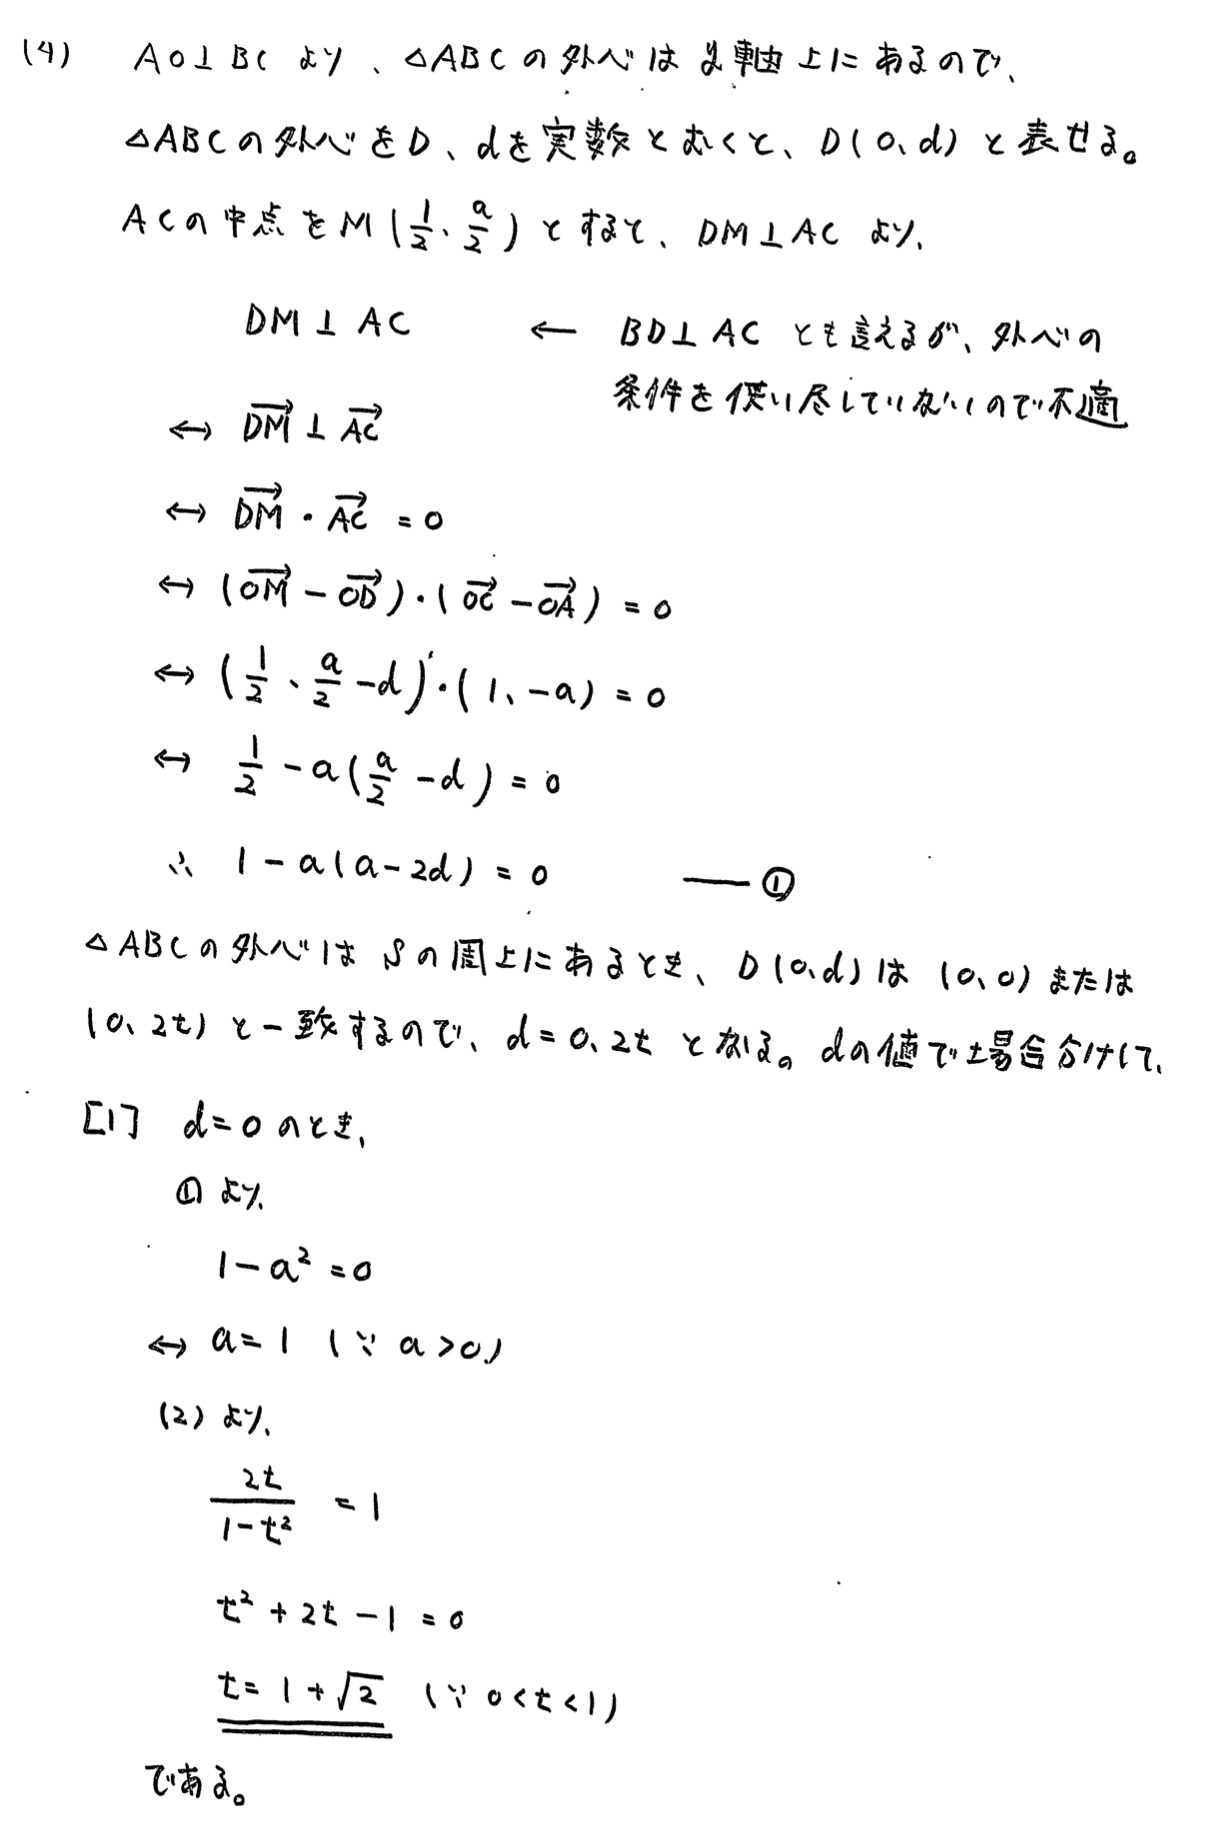 広島大学入試文系数学2022年(令和4年)過去問題(解答・解説)